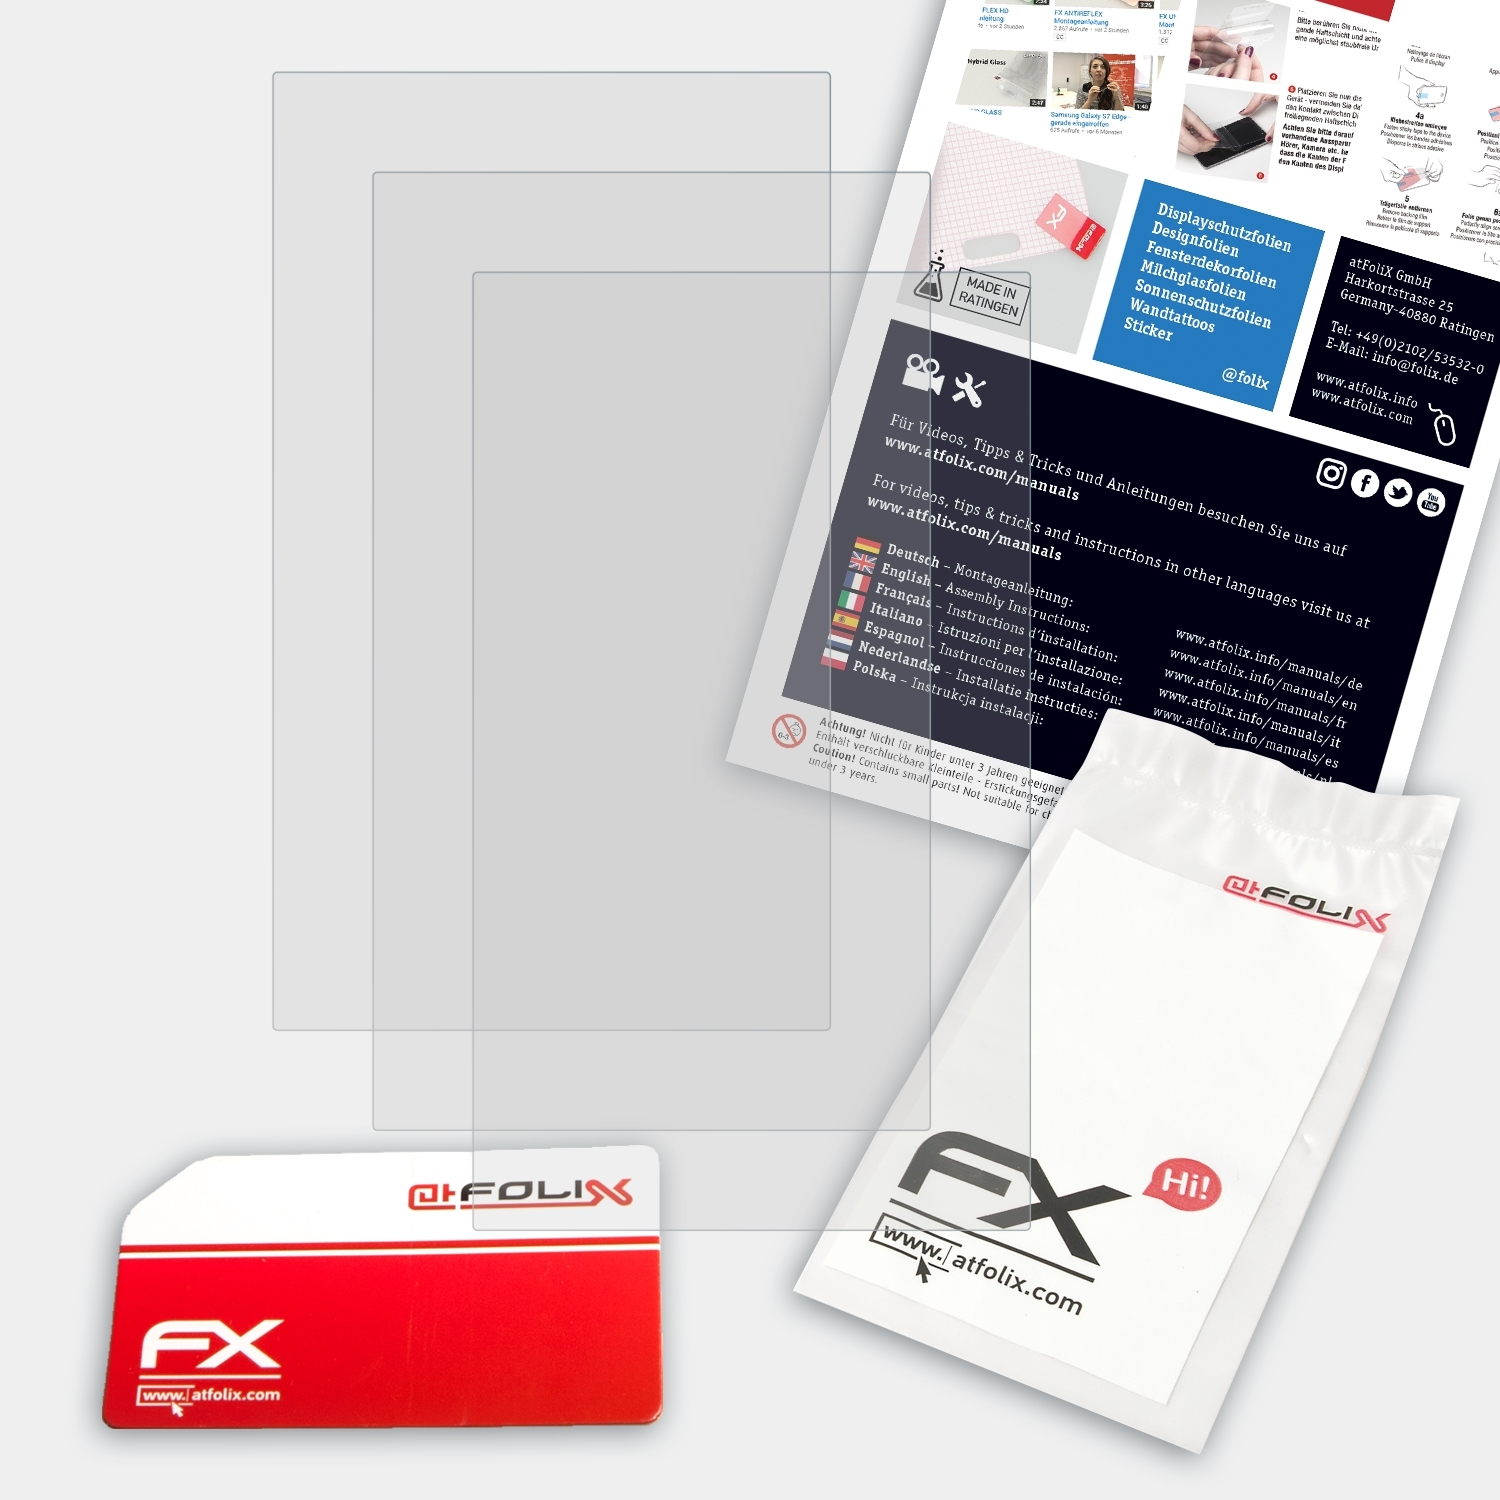 ATFOLIX 3x FX-Antireflex Displayschutz(für Razer Phone 2)